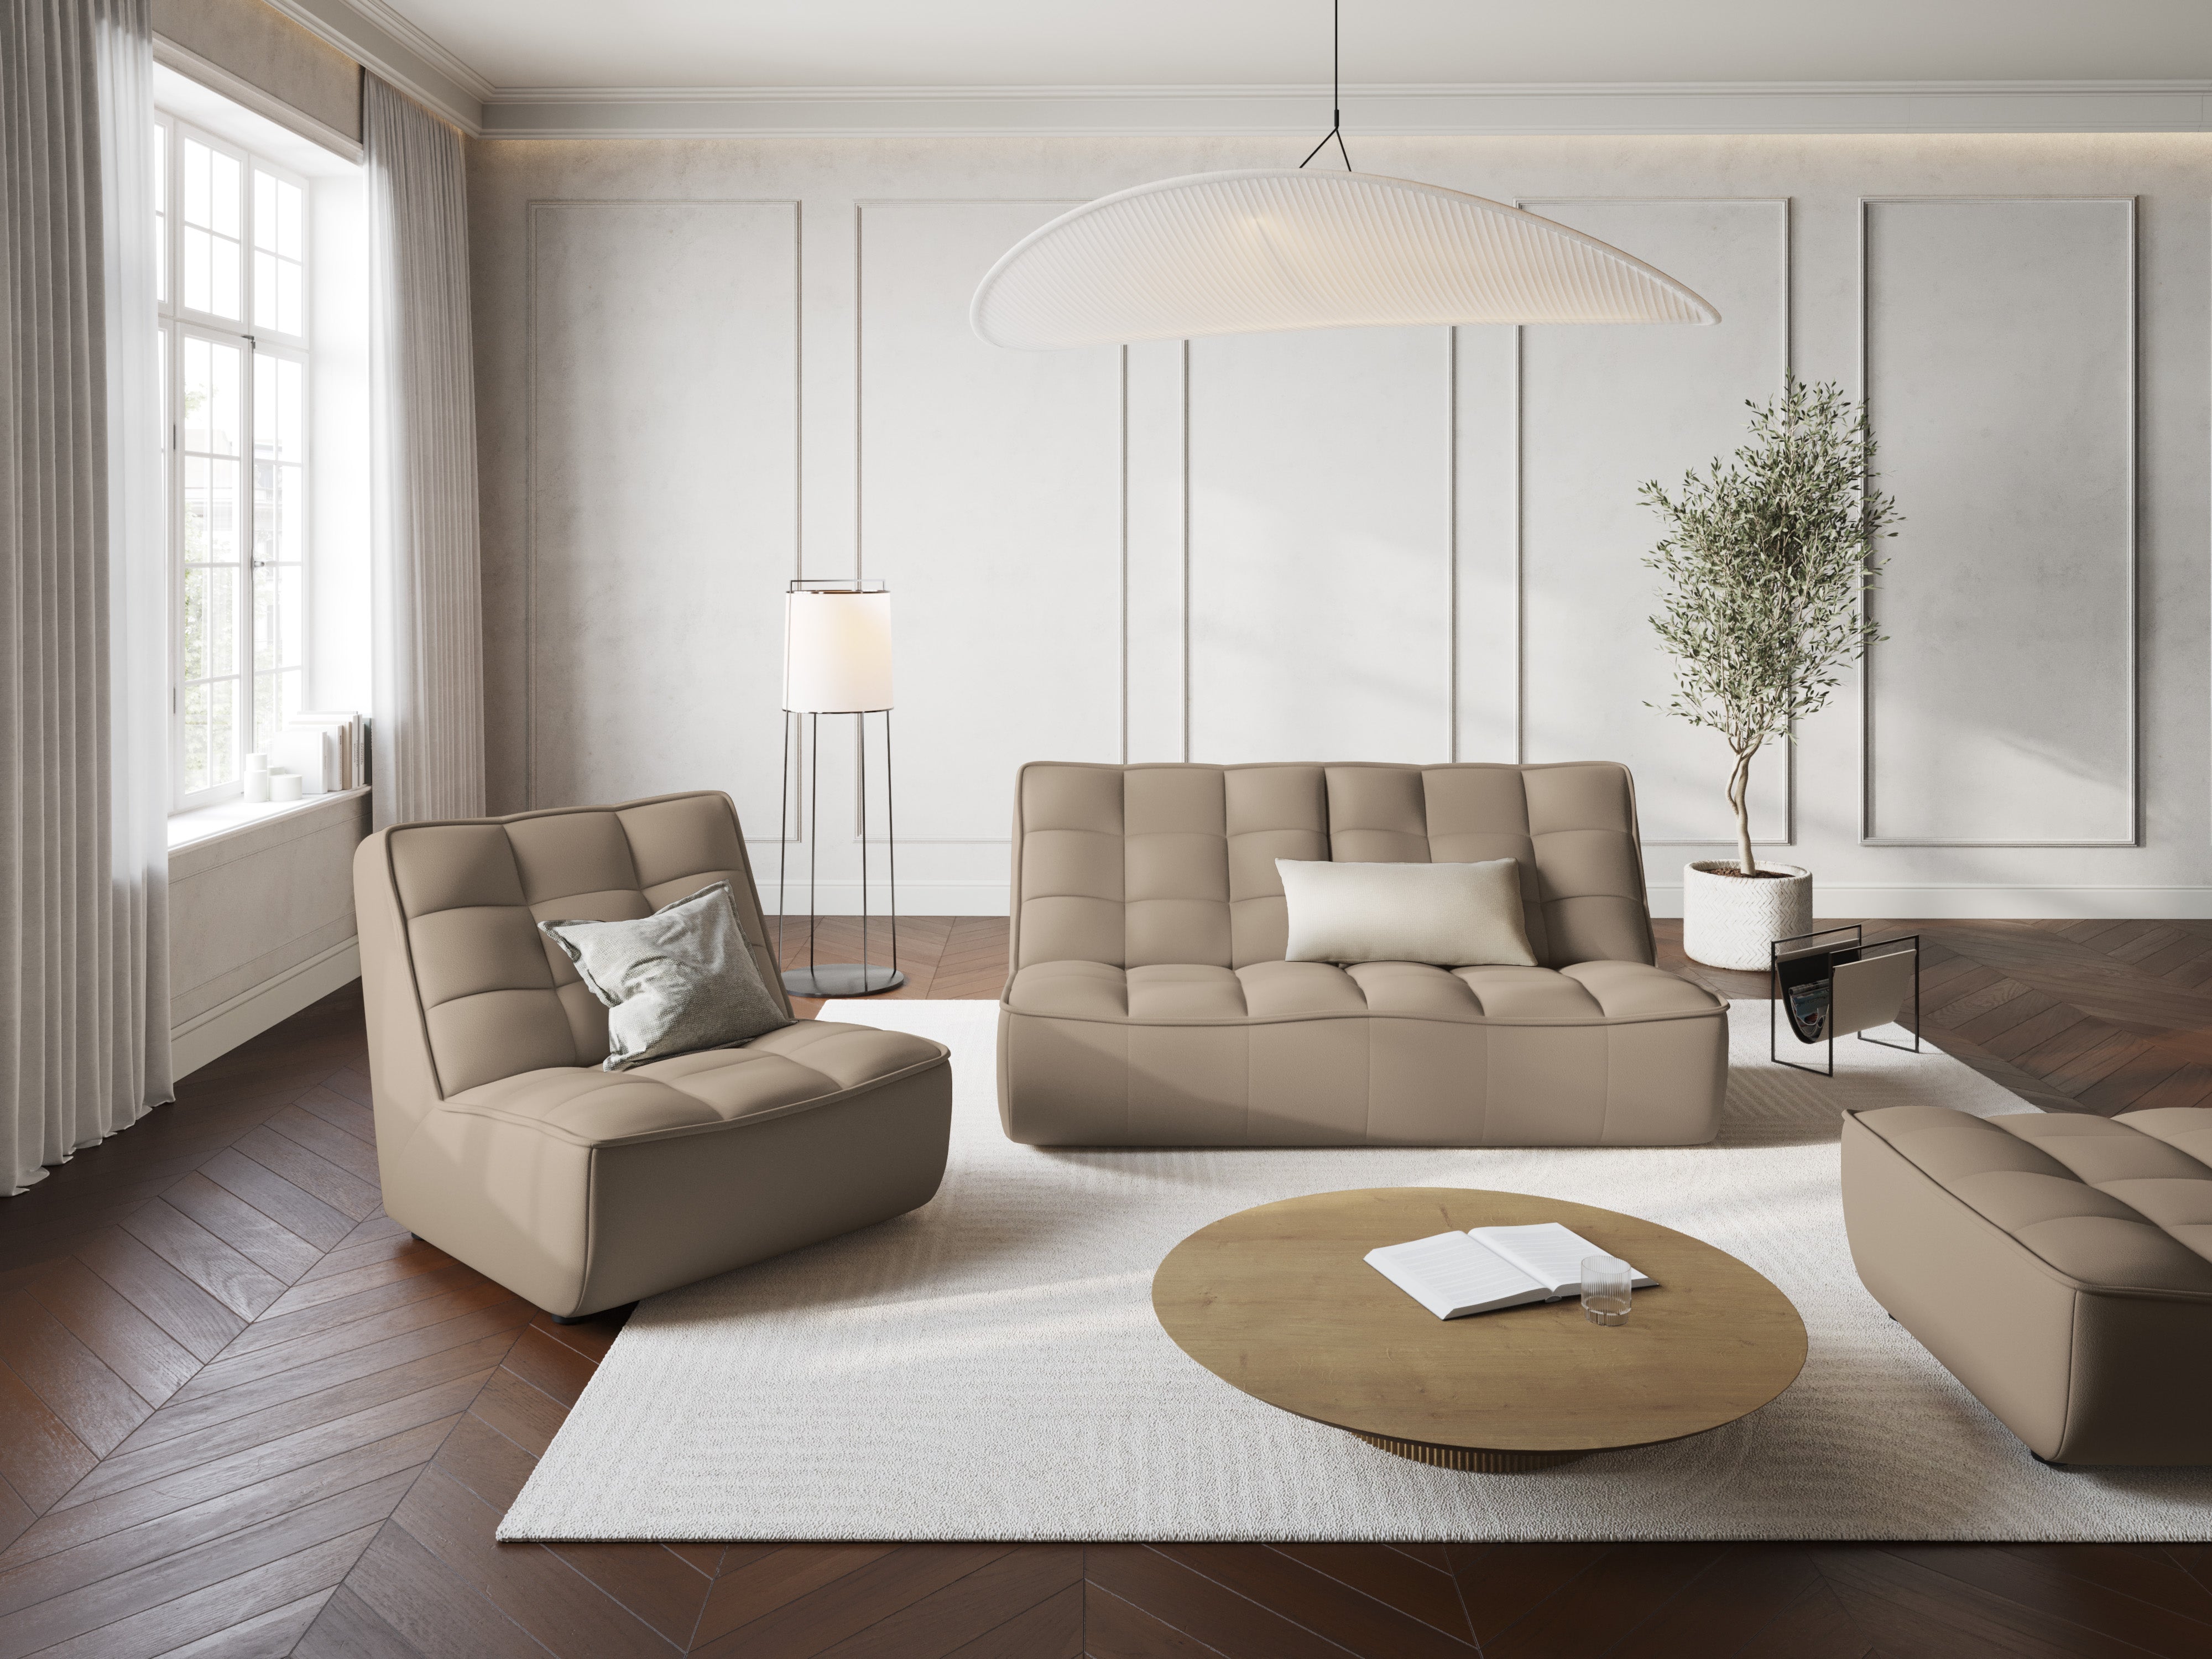 Sofa 2-osobowa MONI musztardowy, Maison Heritage, Eye on Design